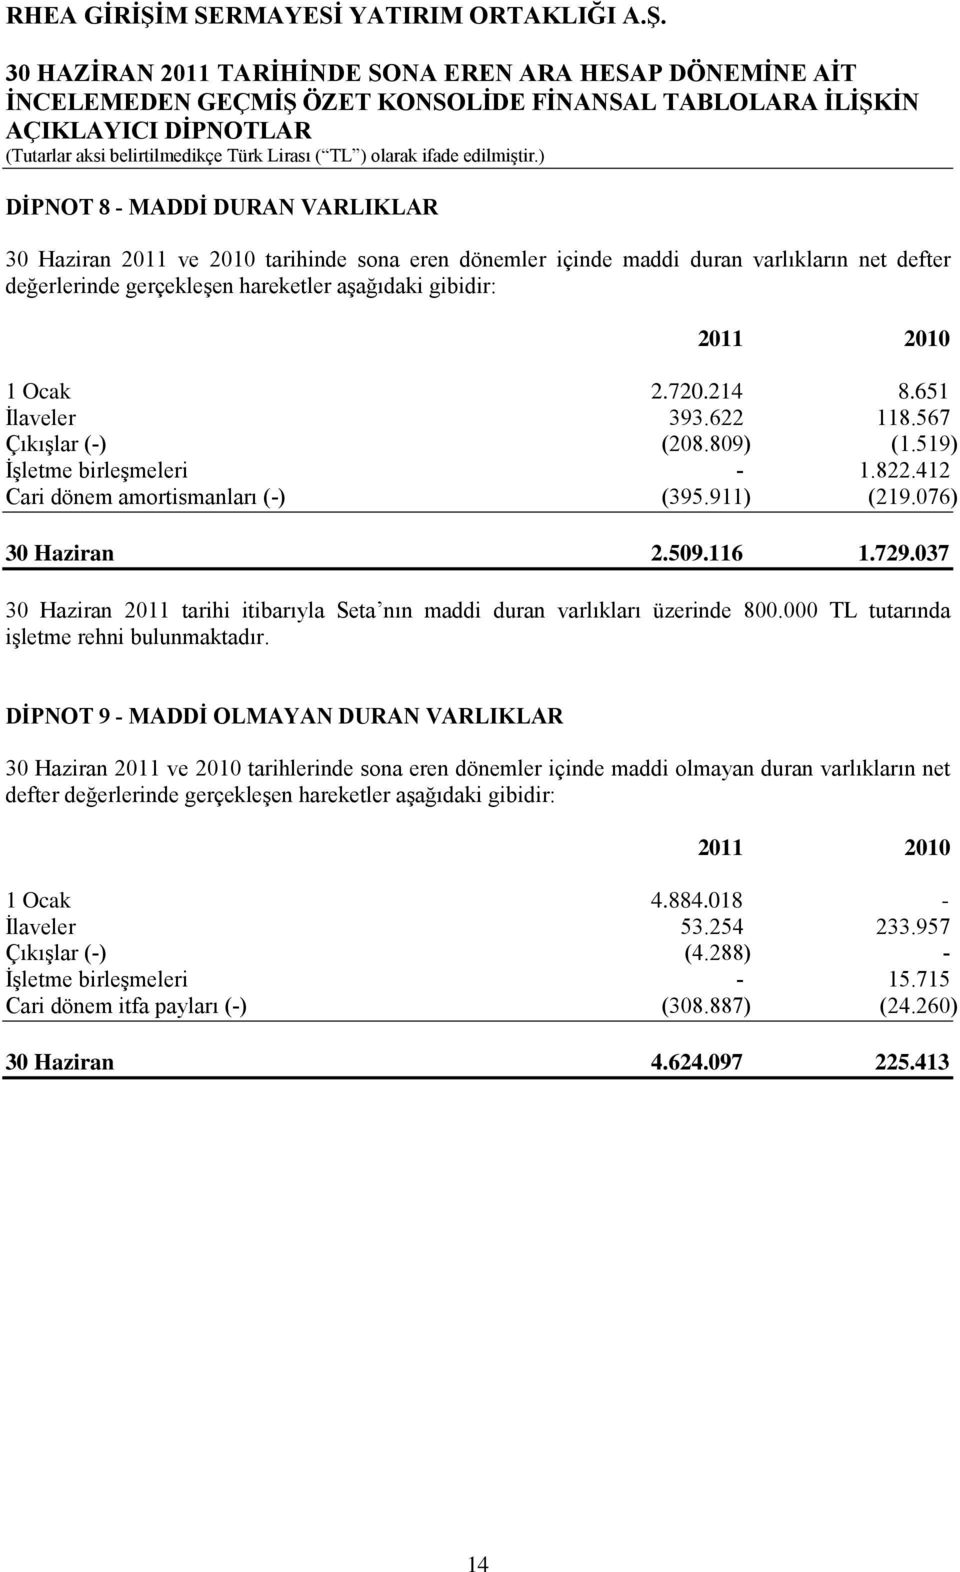 037 30 Haziran 2011 tarihi itibarıyla Seta nın maddi duran varlıkları üzerinde 800.000 TL tutarında işletme rehni bulunmaktadır.